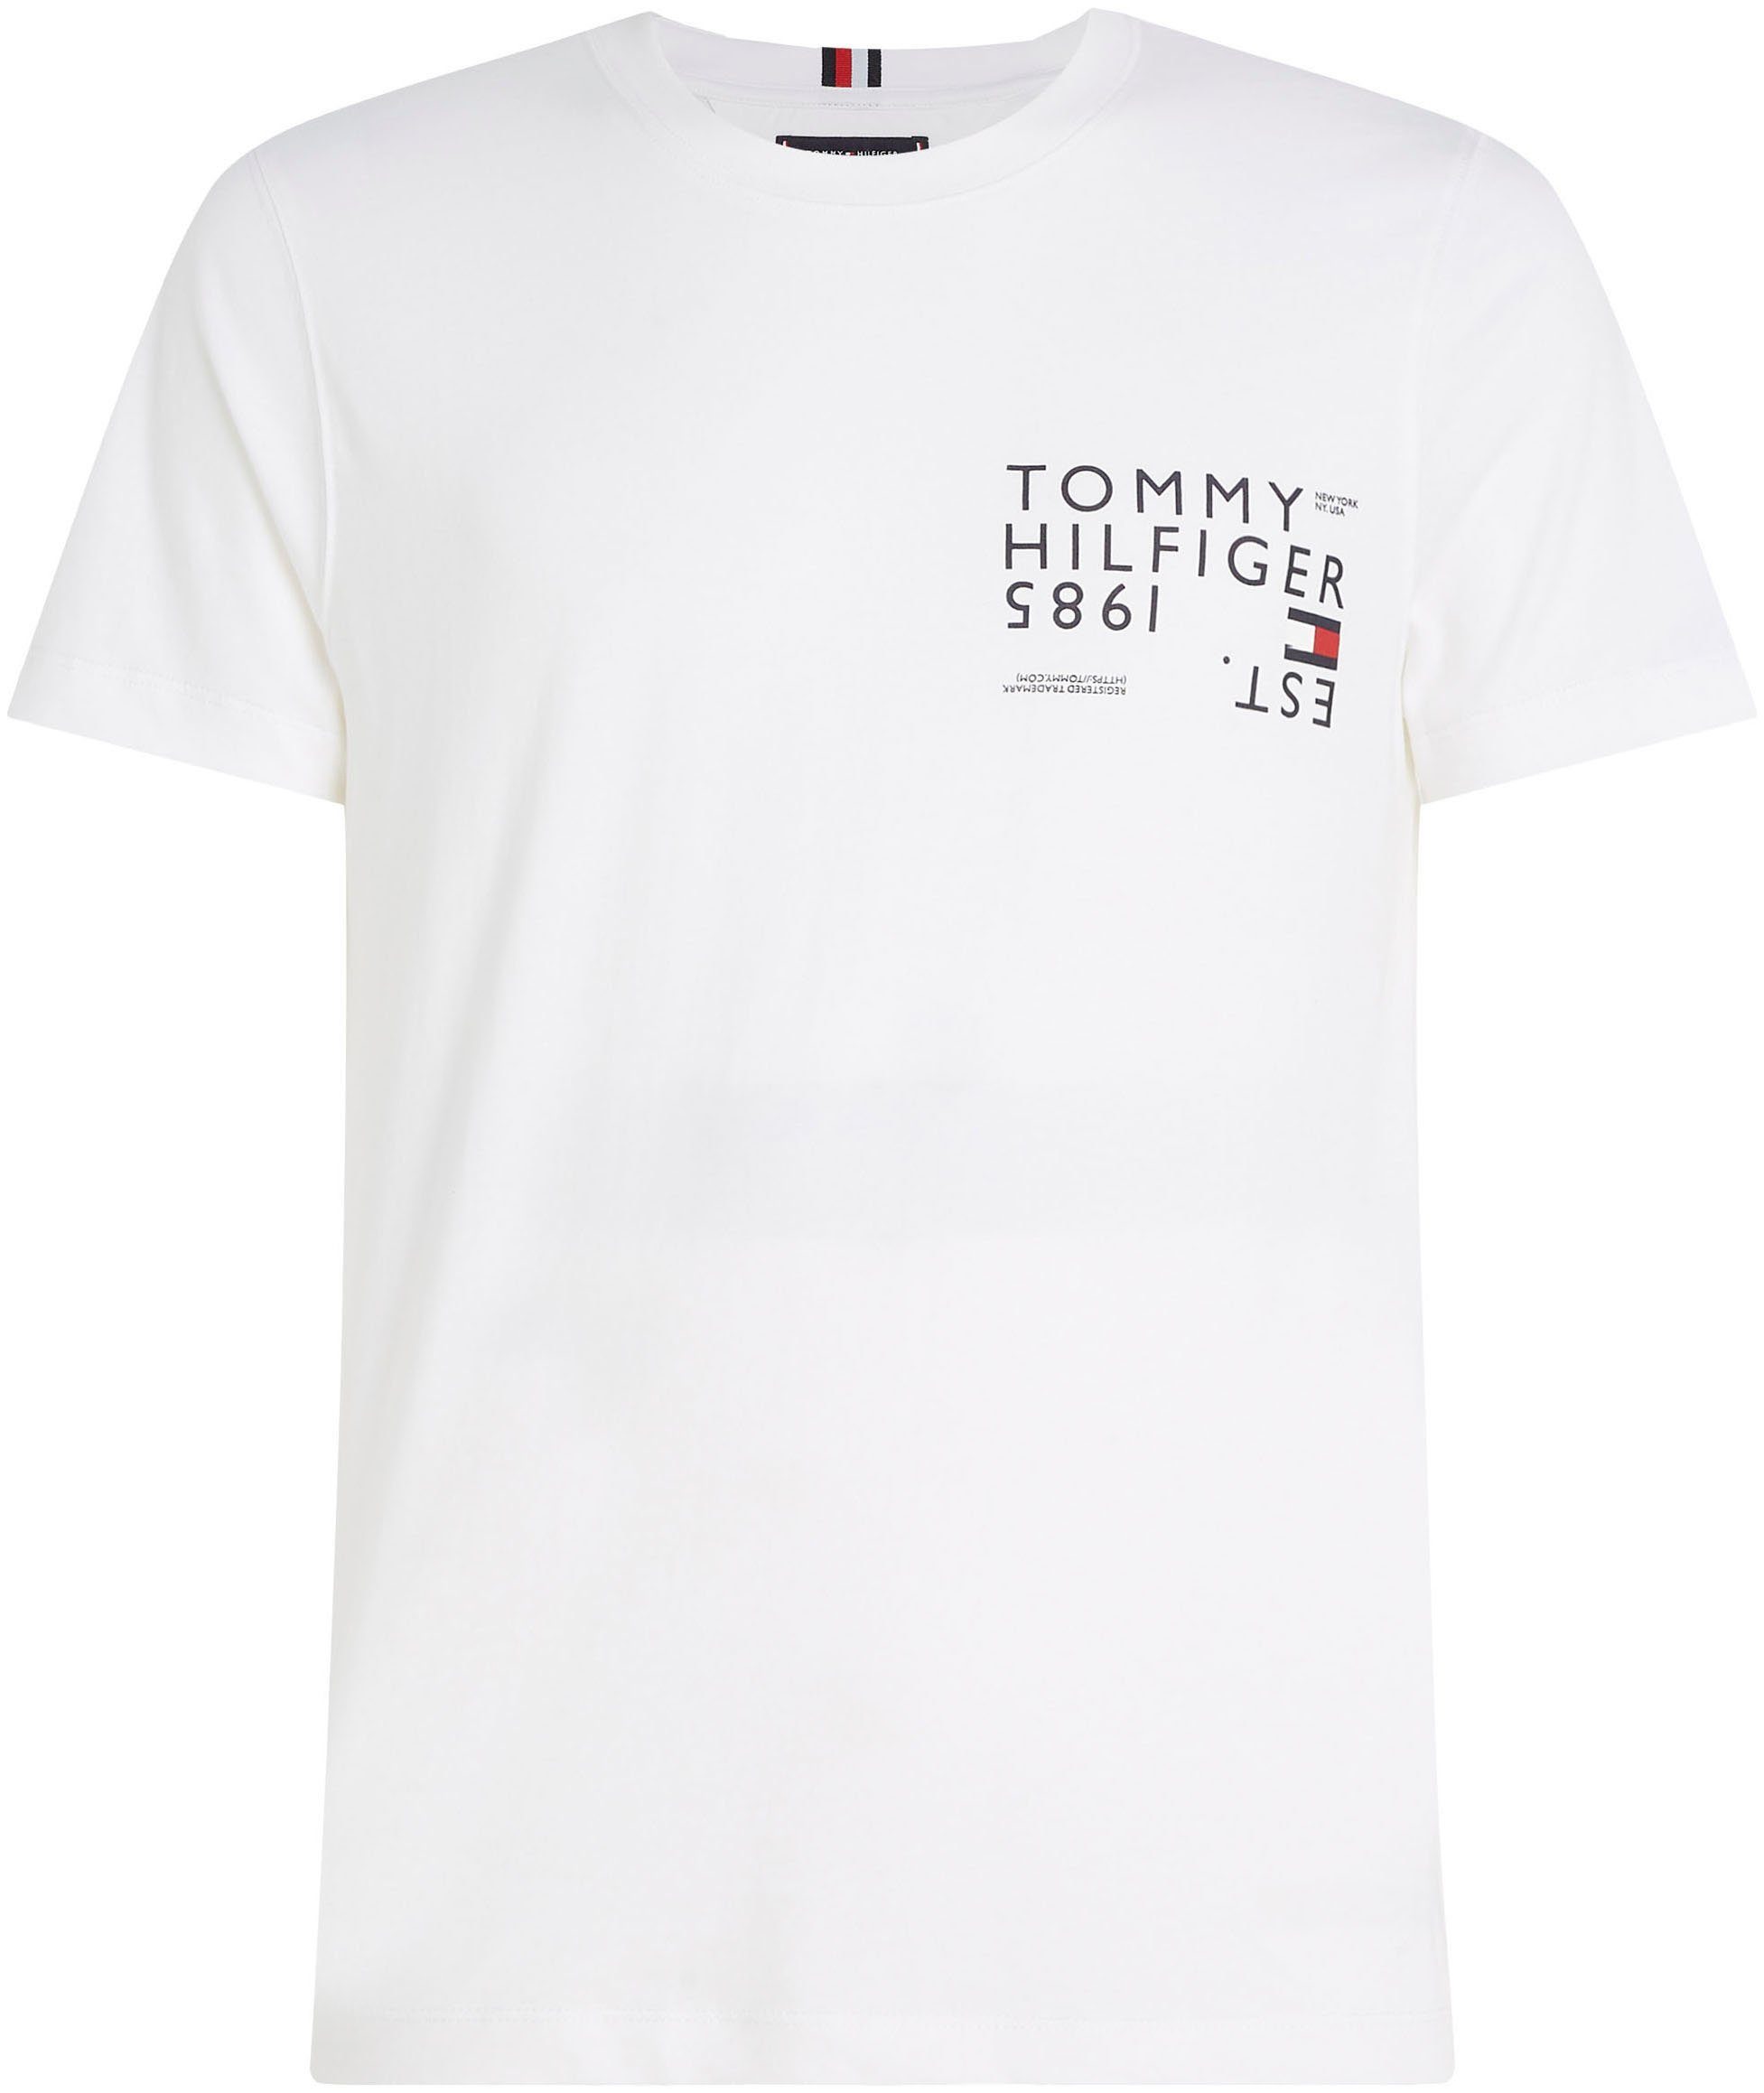 Hilfiger mit BACK großem Rücken White TEE BRAND Tommy LOVE TH-Aufdruck auf dem Rundhalsshirt